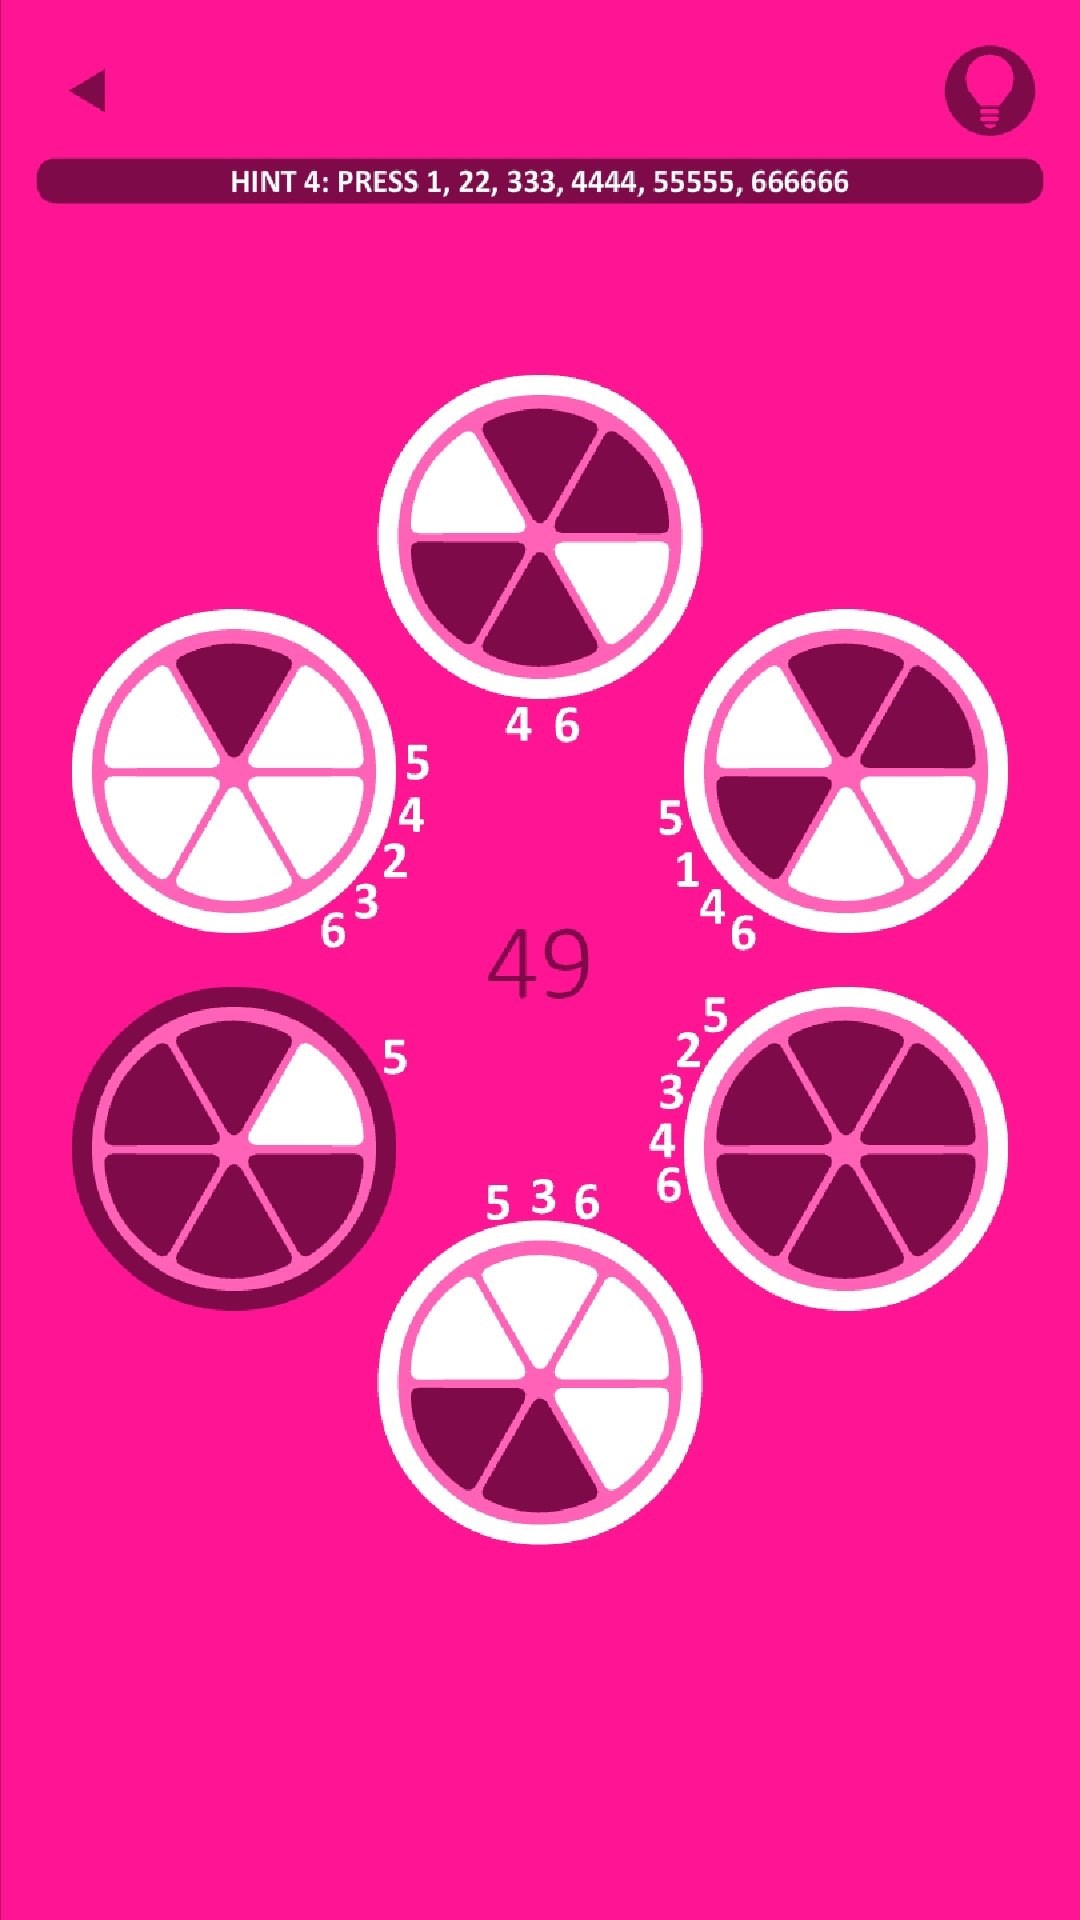 Bulmaca oyunu Pink, ücretsiz olarak mobil cihazlarda yayınlandı